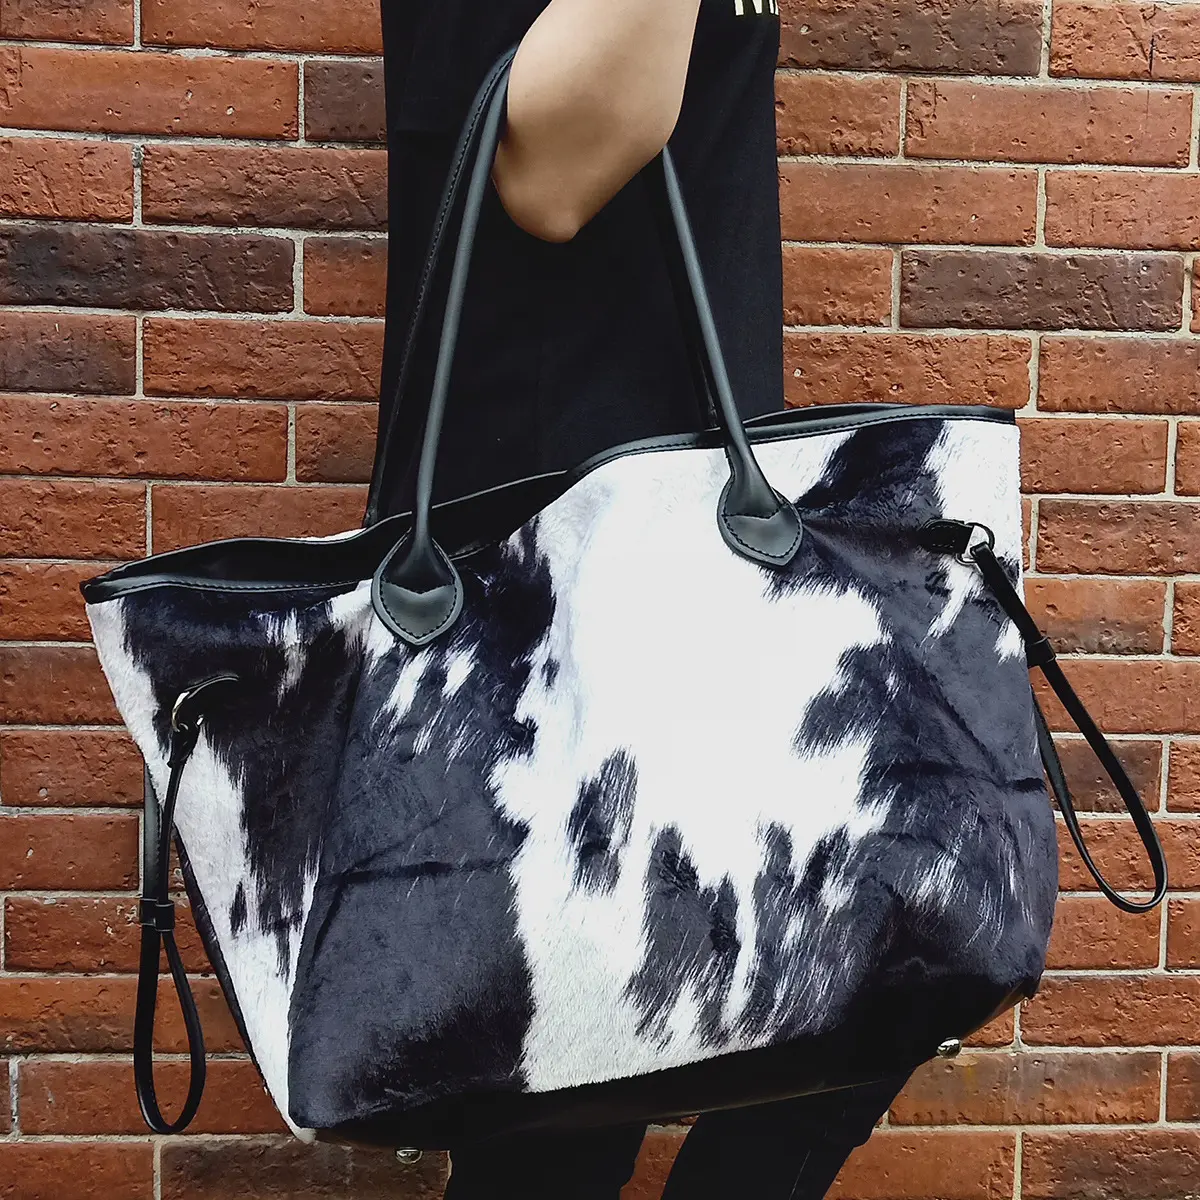 नया फैशन लेडीज़ हैंडबैग बैग गाय पैटर्न सॉफ्ट प्लश प्रिंटिंग पीयू हैंडल बड़ी क्षमता वाला पोर्टेबल शोल्डर बैग जिपर और हैस्प के साथ